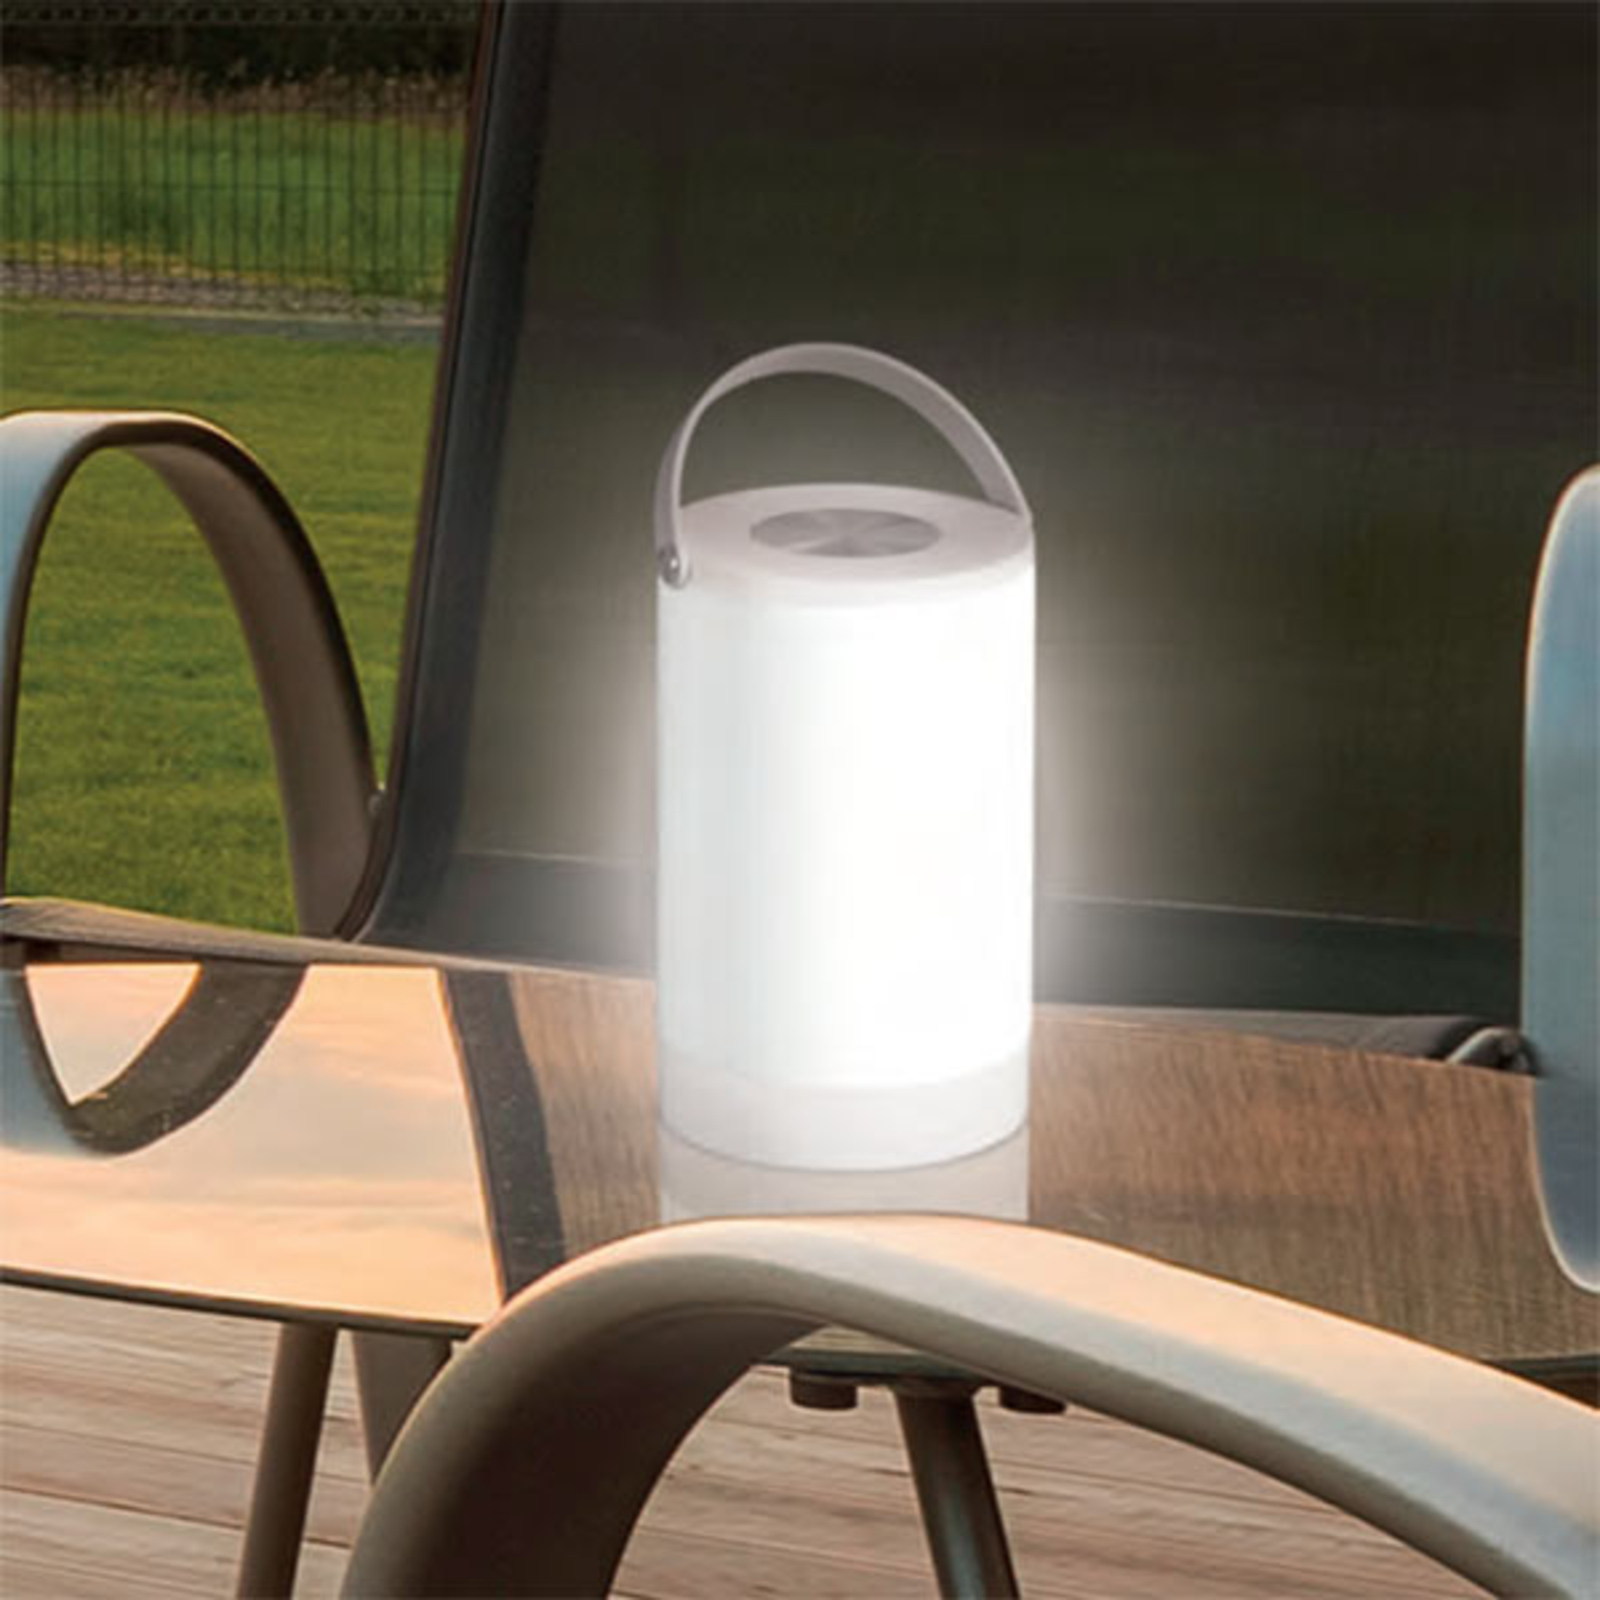 Lampa stołowa LED Keke, zasilana bateryjnie i przenośna